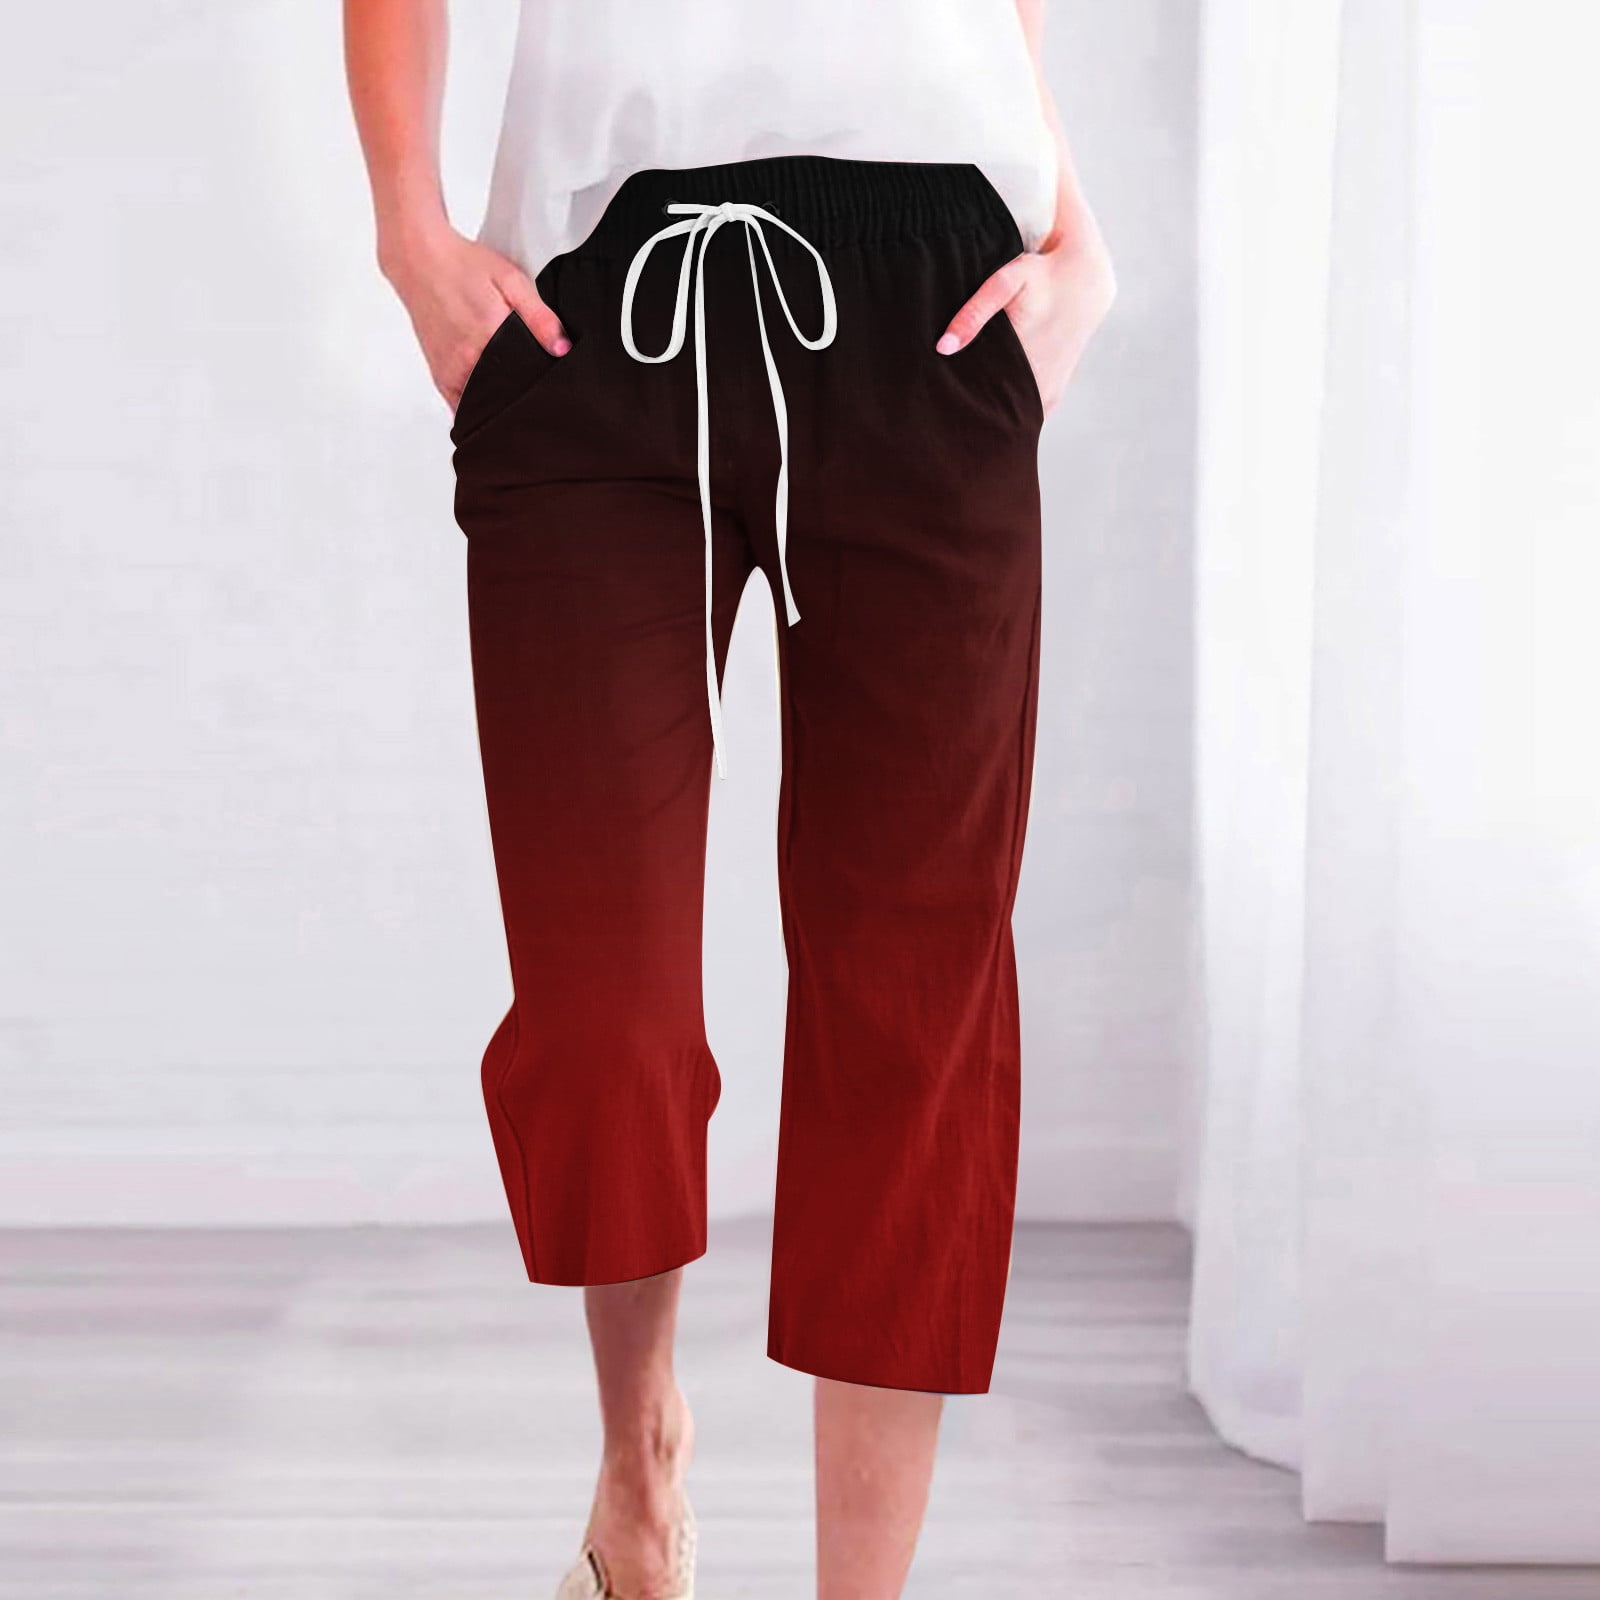 Jsaierl Women's Capri Pants Casual Elastic Waist Capri Shorts Petite ...